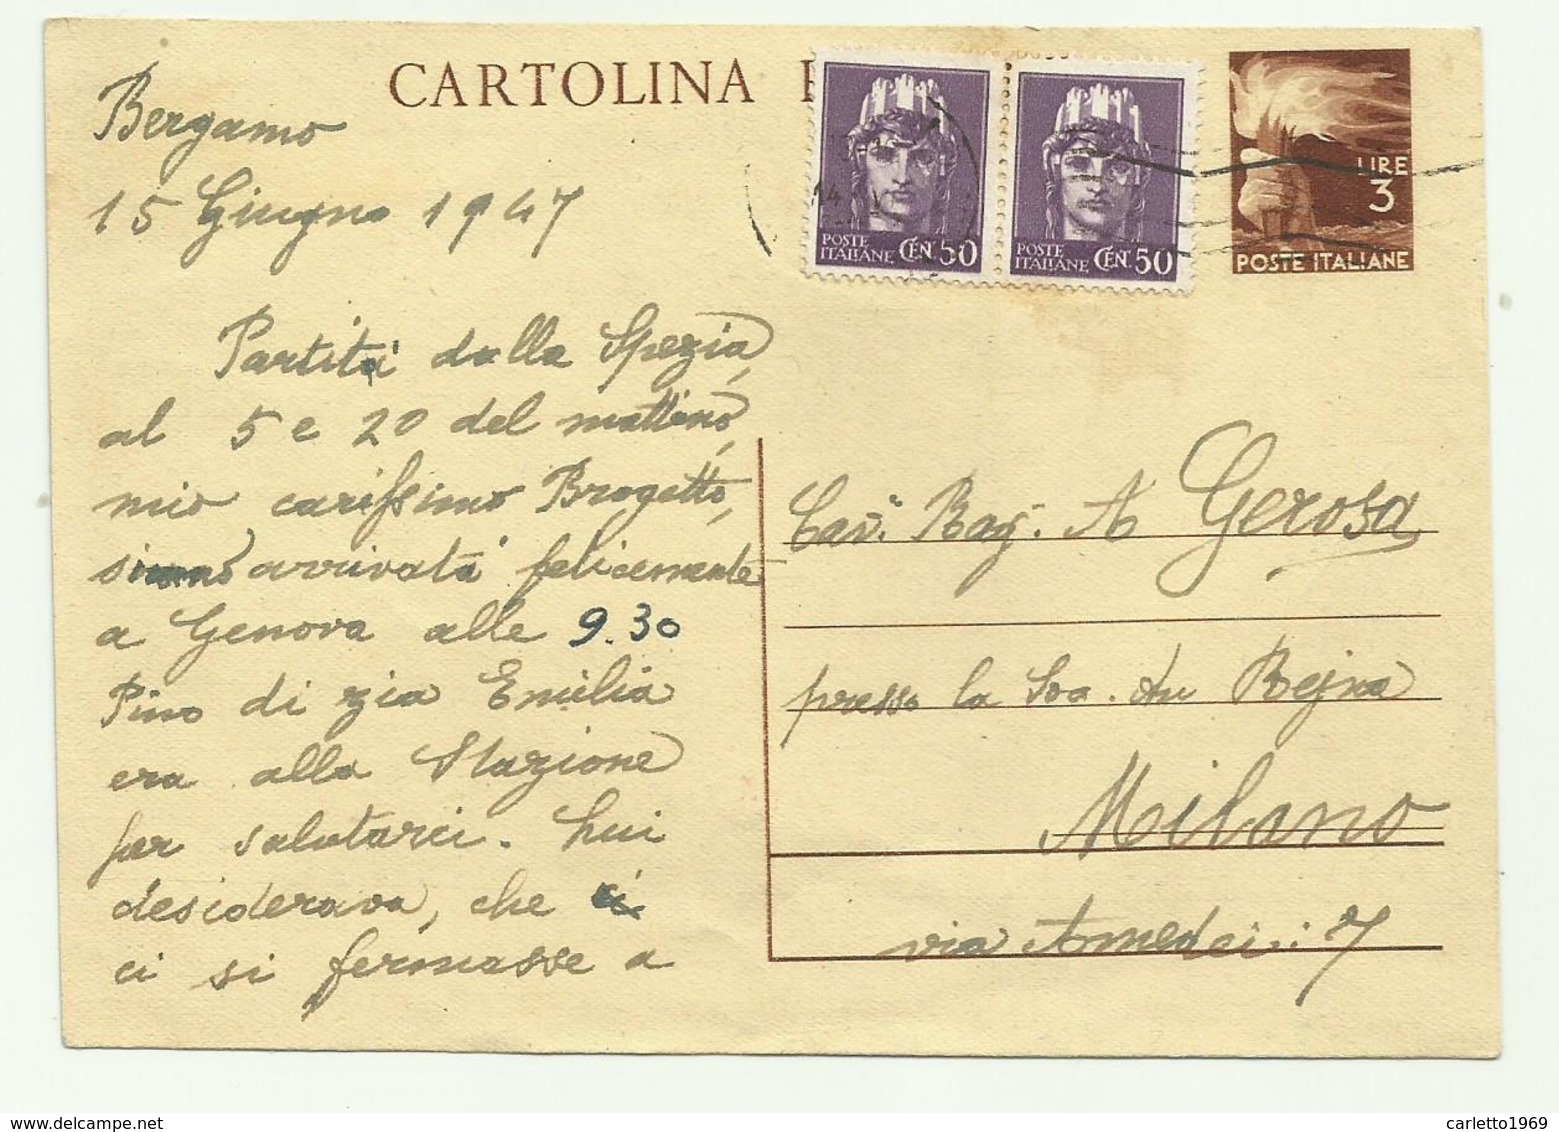 CARTOLINA POSTALE LIRE 3  CON AGGIUNTA 2 DA CENTESIMI 50 LUOTENENZA 1947 FG - 1946-60: Oblitérés